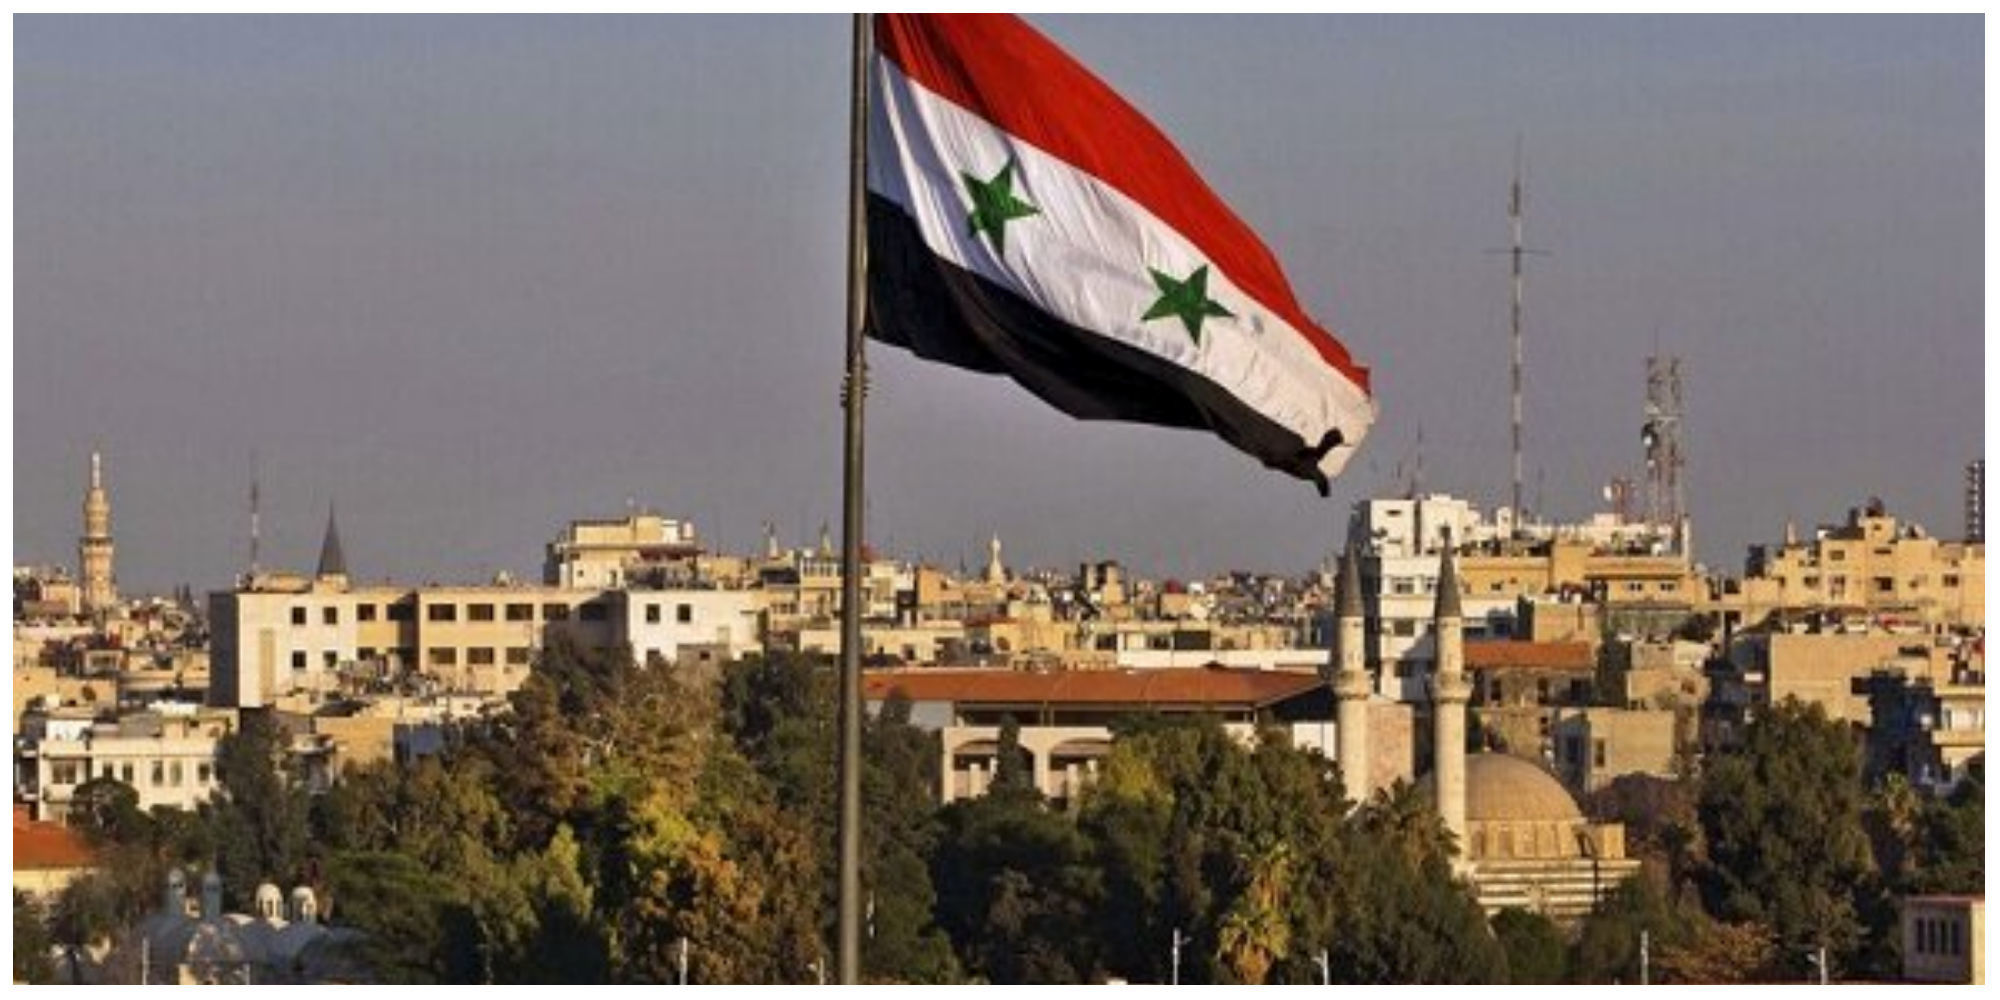 اولین واکنش ارتش سوریه به حمله هوایی آمریکا در دیرالزور
